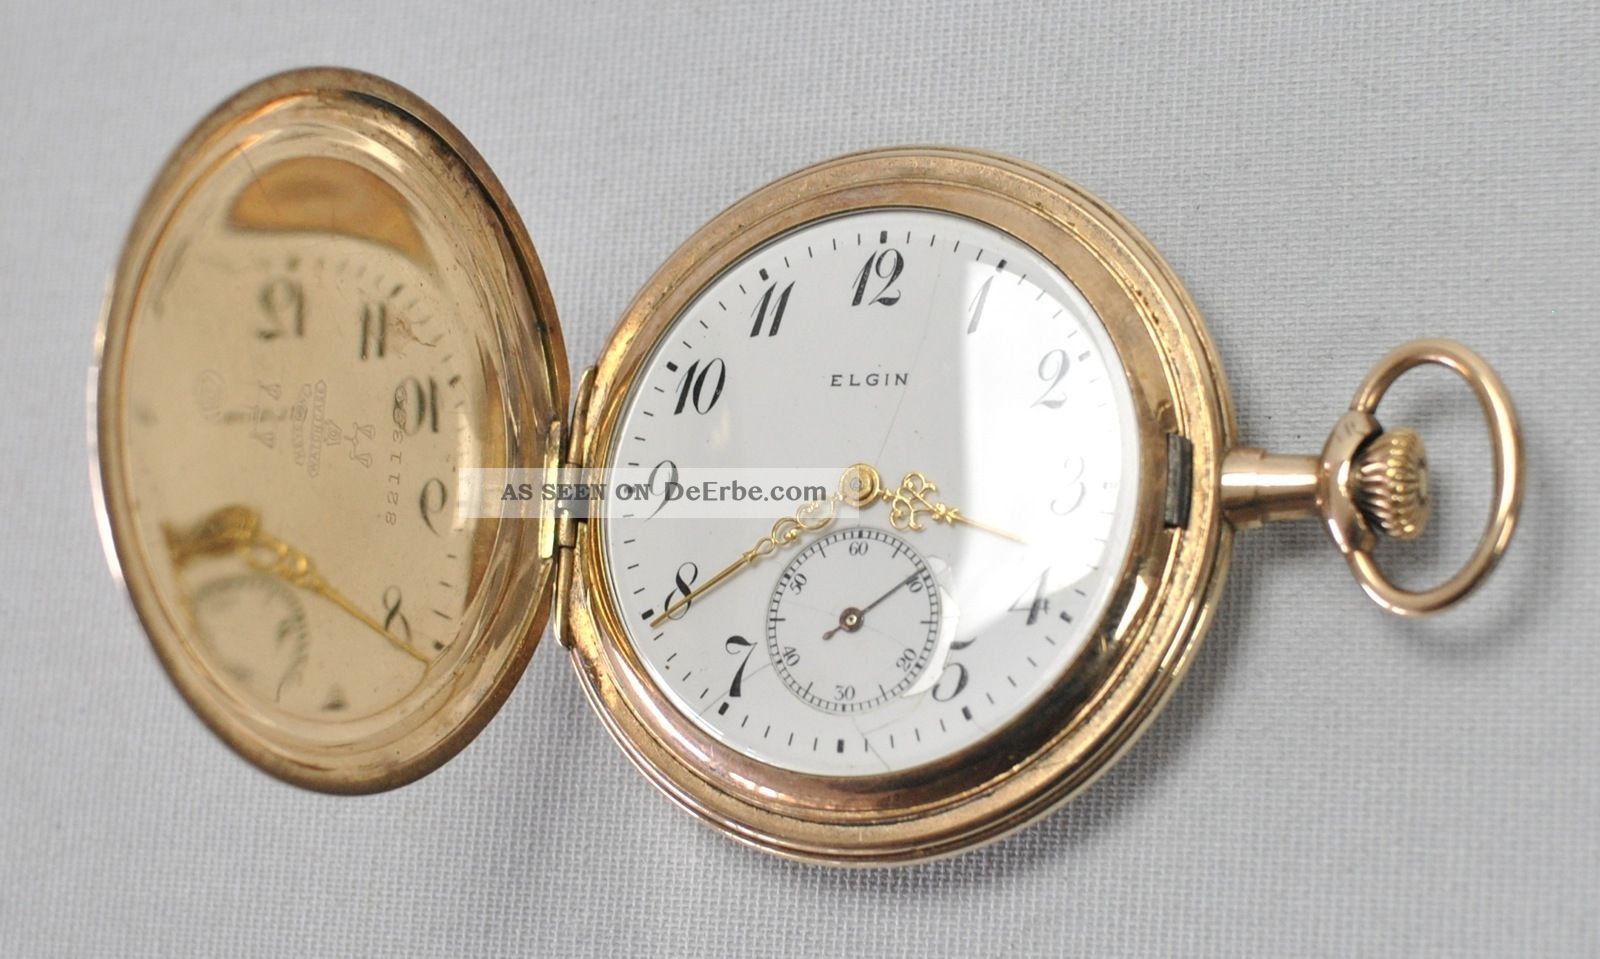 Taschenuhr Vergoldet Elgin Keystone Pocket Watch Gold Filled Antik Vintage Taschenuhren Bild